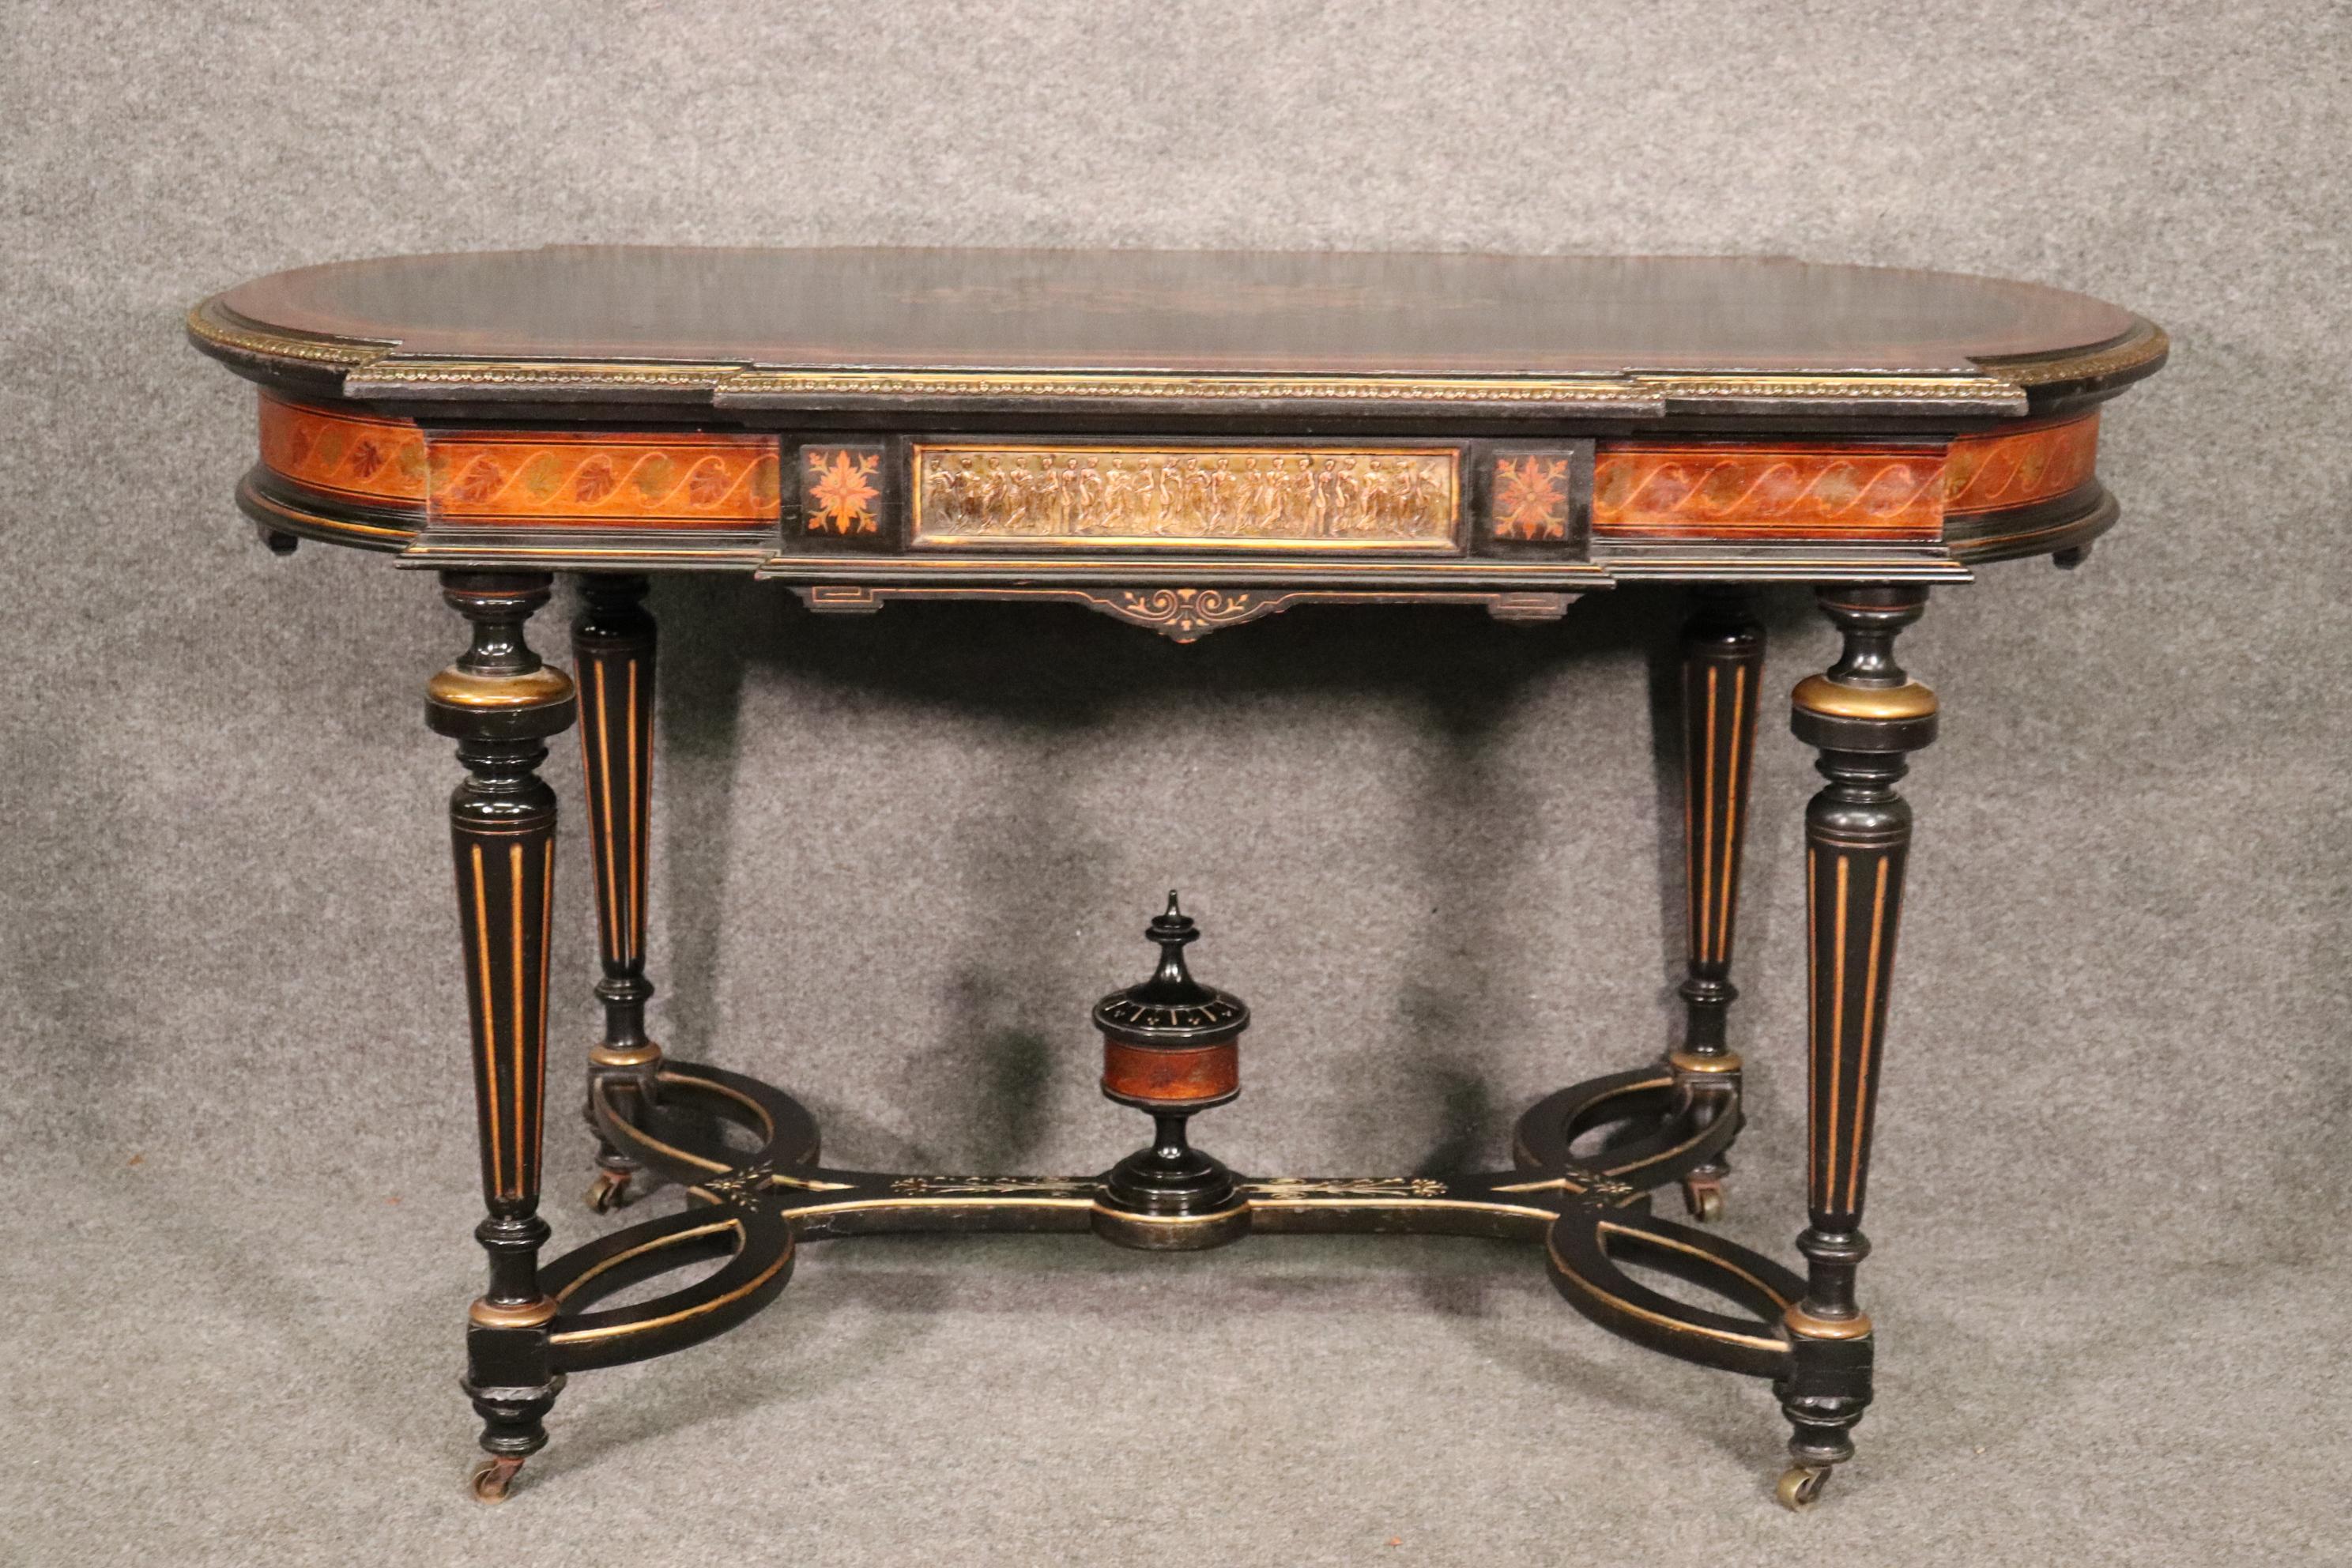 Dieser antike viktorianische Tisch mit Intarsien, der Pottier & Stymus zugeschrieben wird, ist definitiv ein wahres Meisterwerk der Intarsien und der Verwendung von Materialien. Der eingelegte Vogel mit seinem Eiernest und der schöne Kontrast